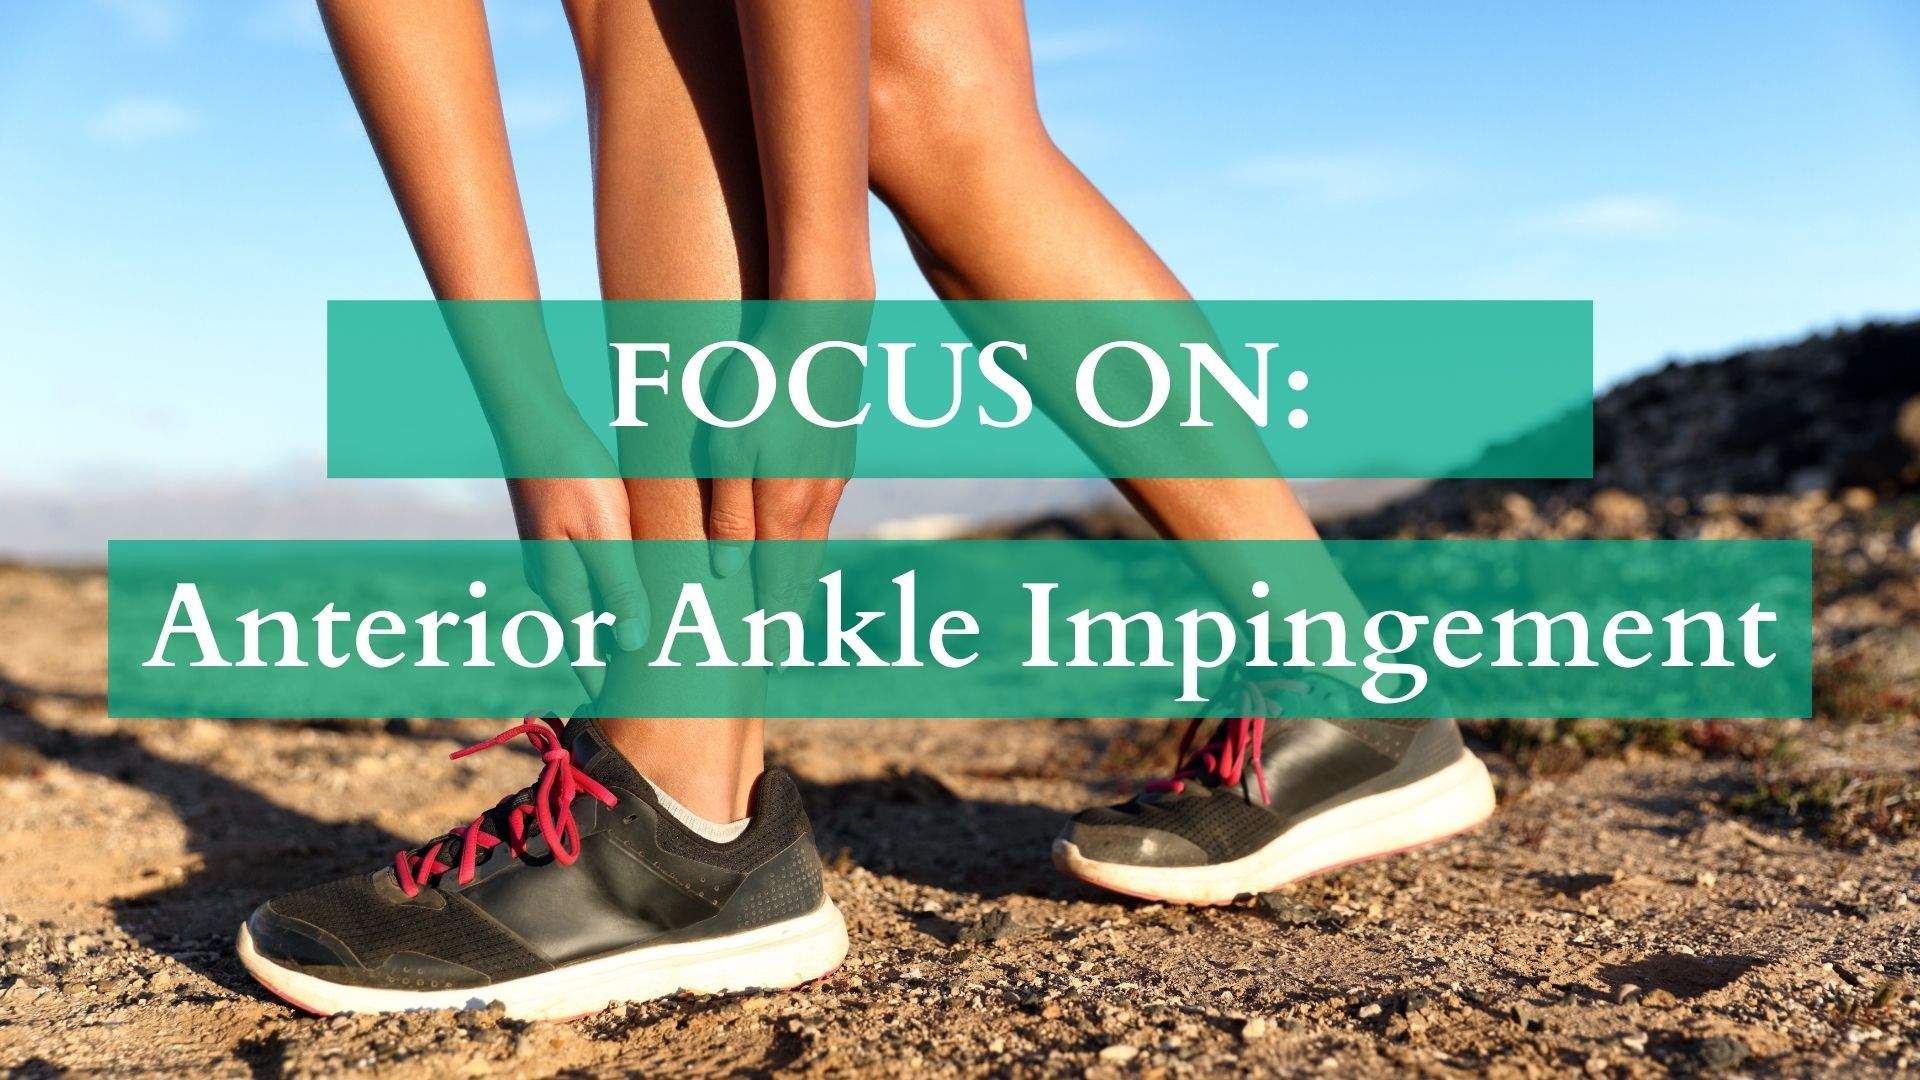 Focus On: Anterior Ankle Impingement